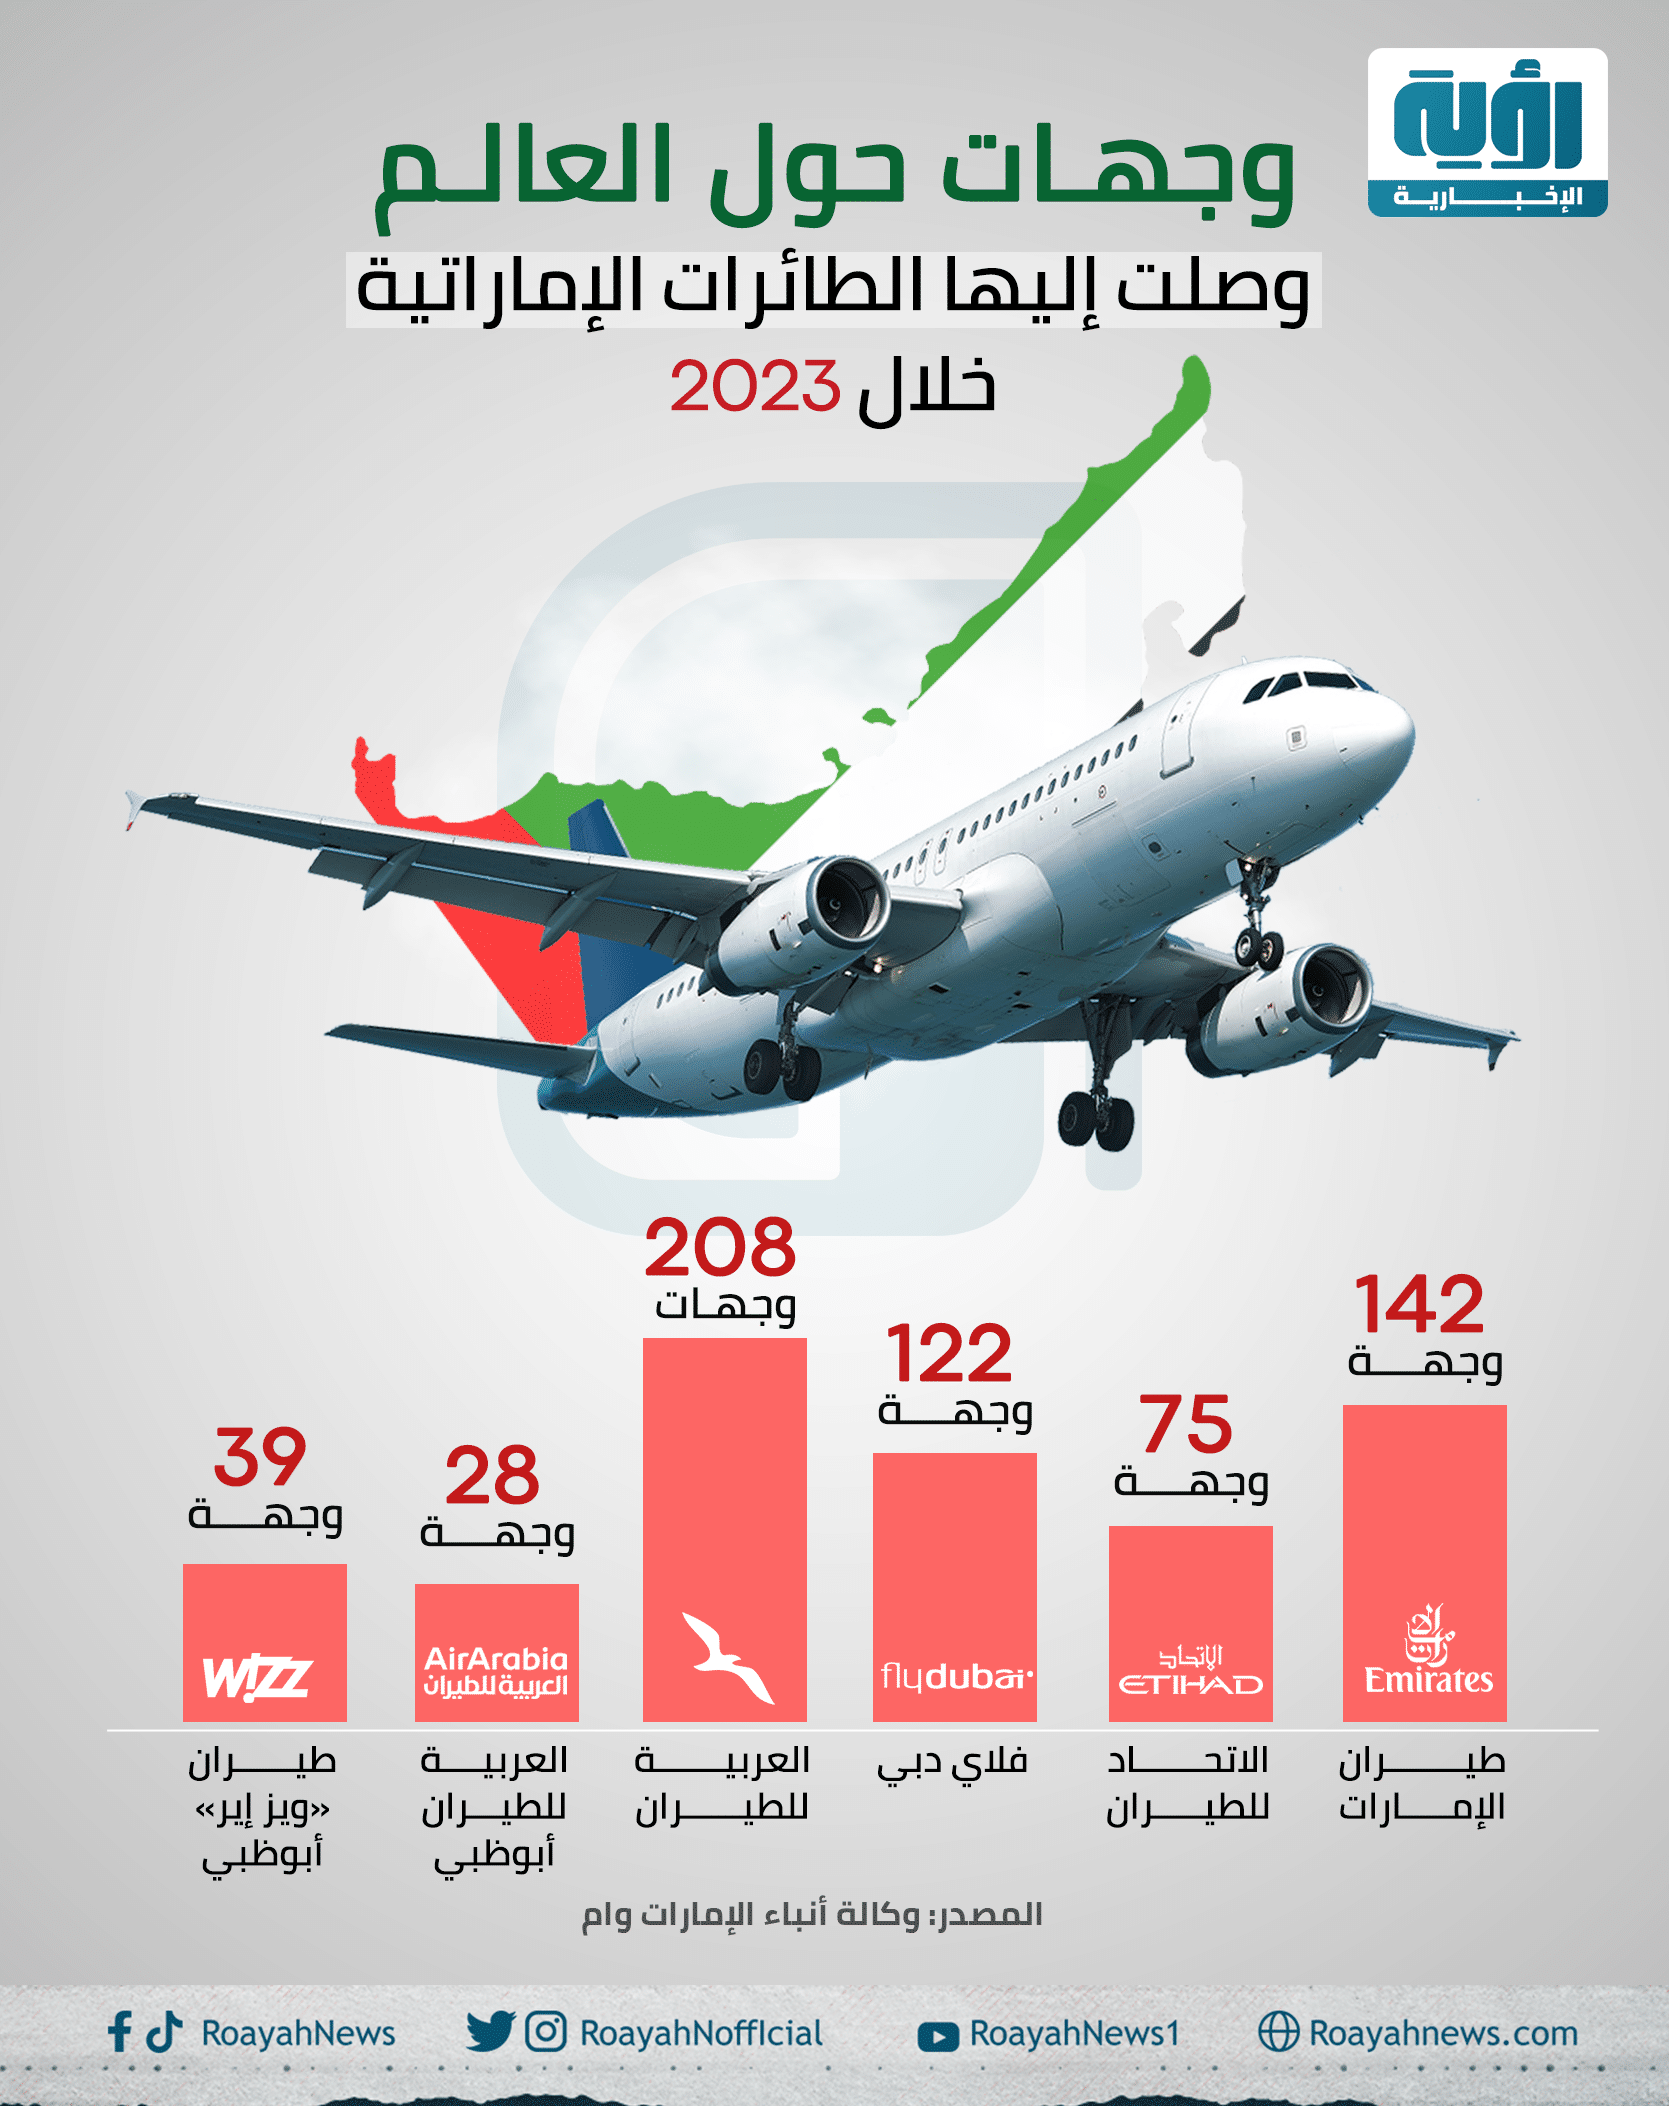 وجهات حول العالم وصلت إليها الطائرات الإماراتية خلال 2023